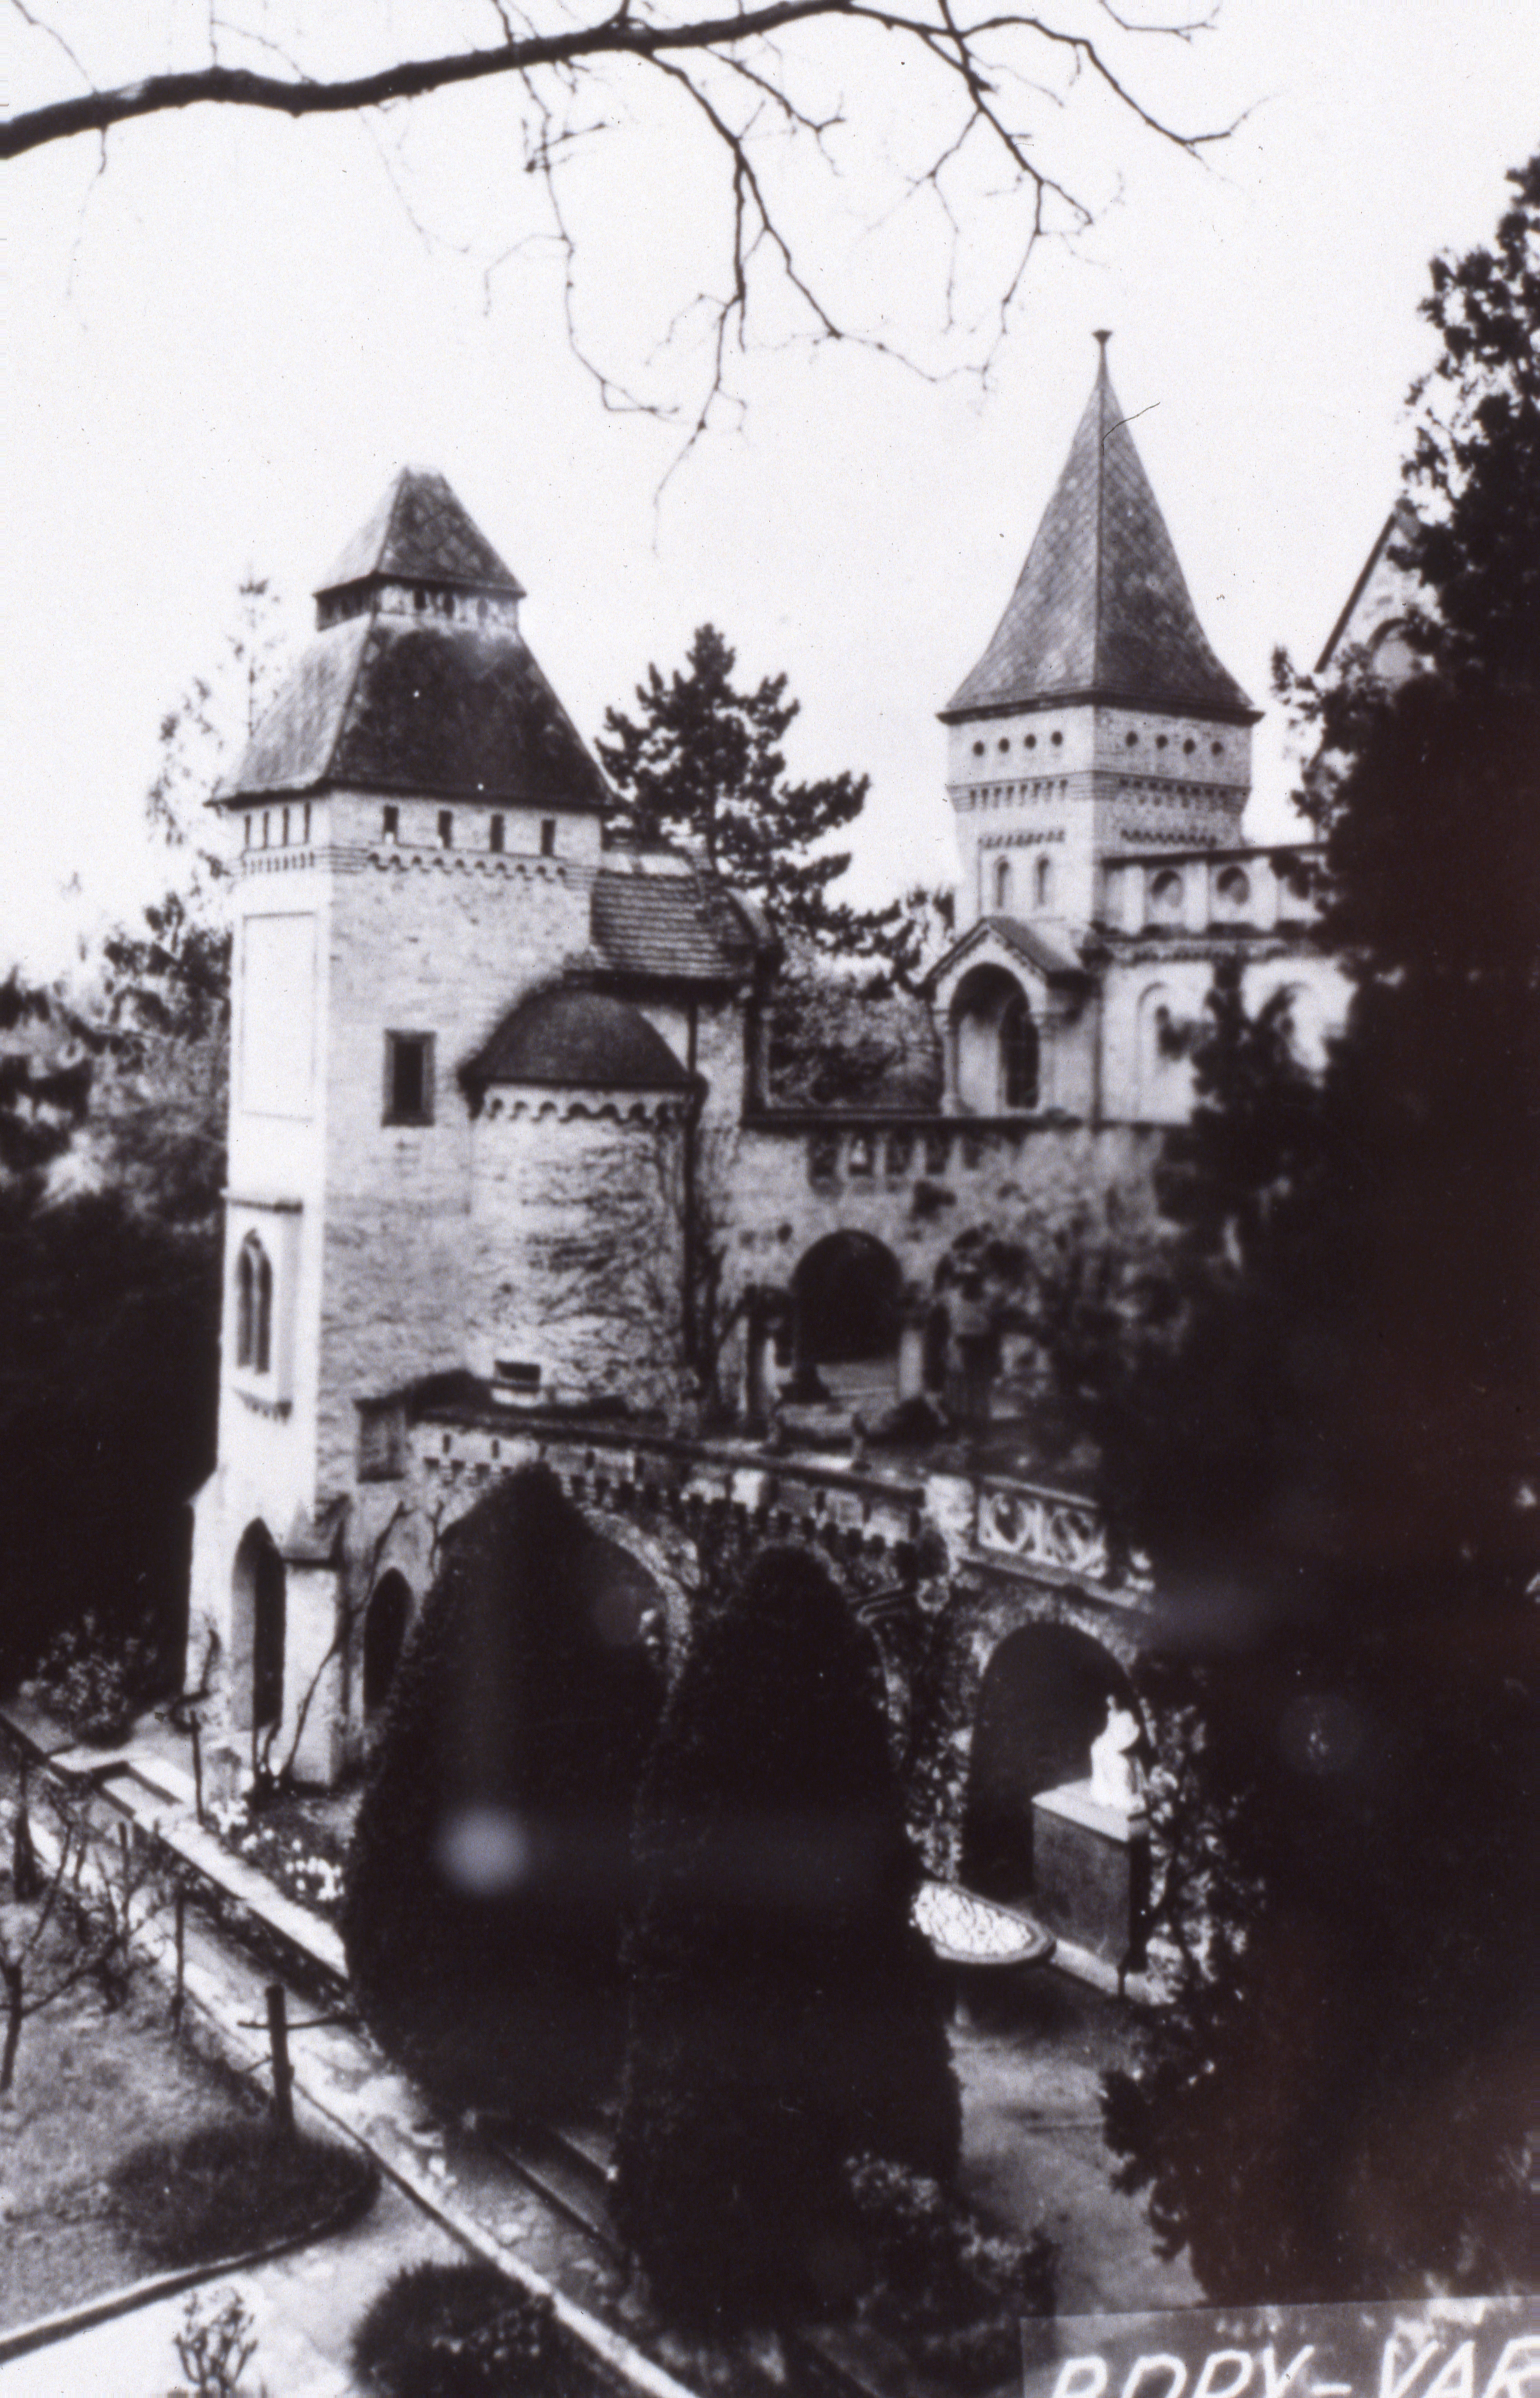 Fotórepró a székesfehérvári Bory-várat ábrázoló képeslapról (MTA Pszichiátriai Művészeti Gyűjtemény CC BY-NC-SA)